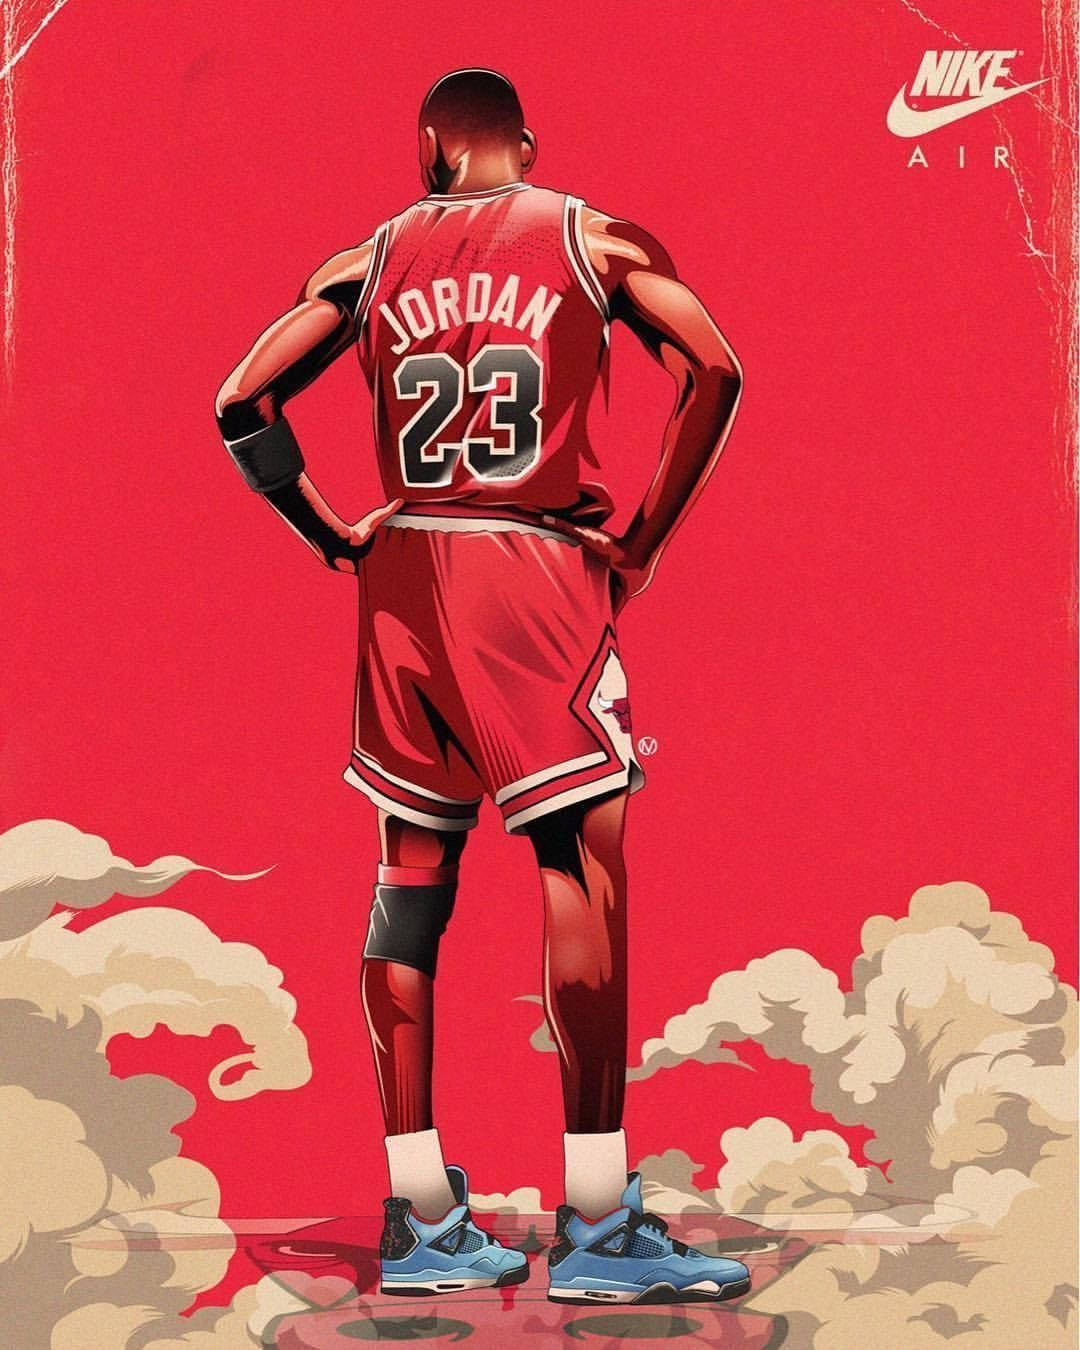 Lebronjames Zollt Michael Jordan Seinen Respekt. Wallpaper